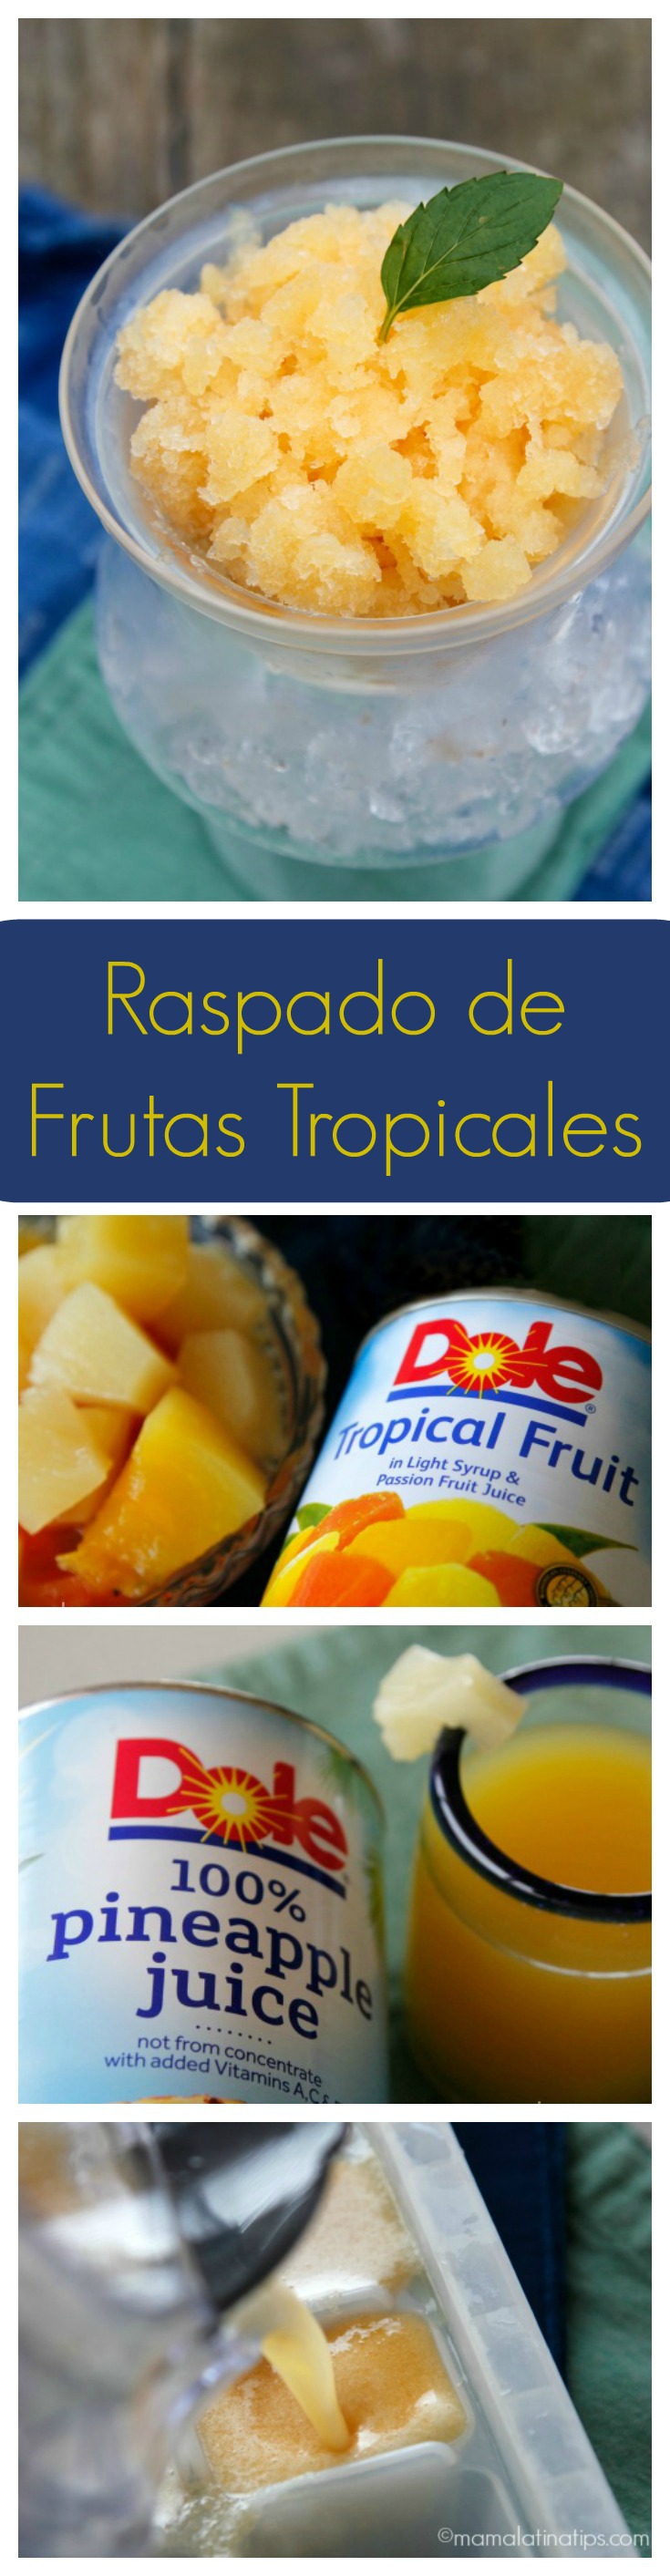 Este refrescante y delicioso raspado de Frutas Tropicales se prepara con sólo 4 ingredientes. Una manera fácil, divertida y exquisita de añadir frutas al menú diario de chicos y grandes. ¡Pruébalo!